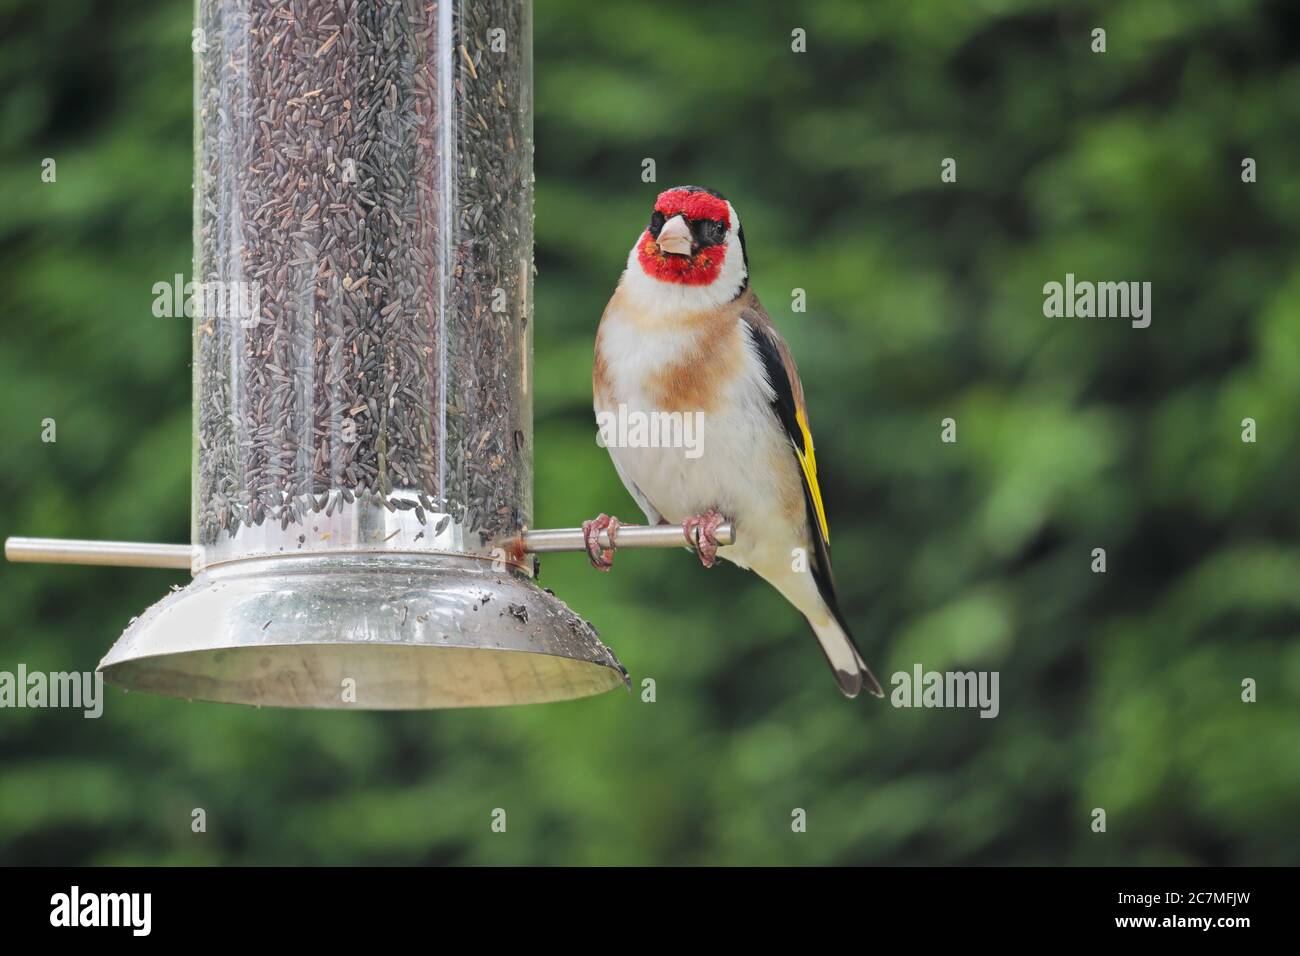 Un goldfinch Carduelis carduelis encaramado en un alimentador de semillas de nyjer contra un fondo verde. Foto de stock